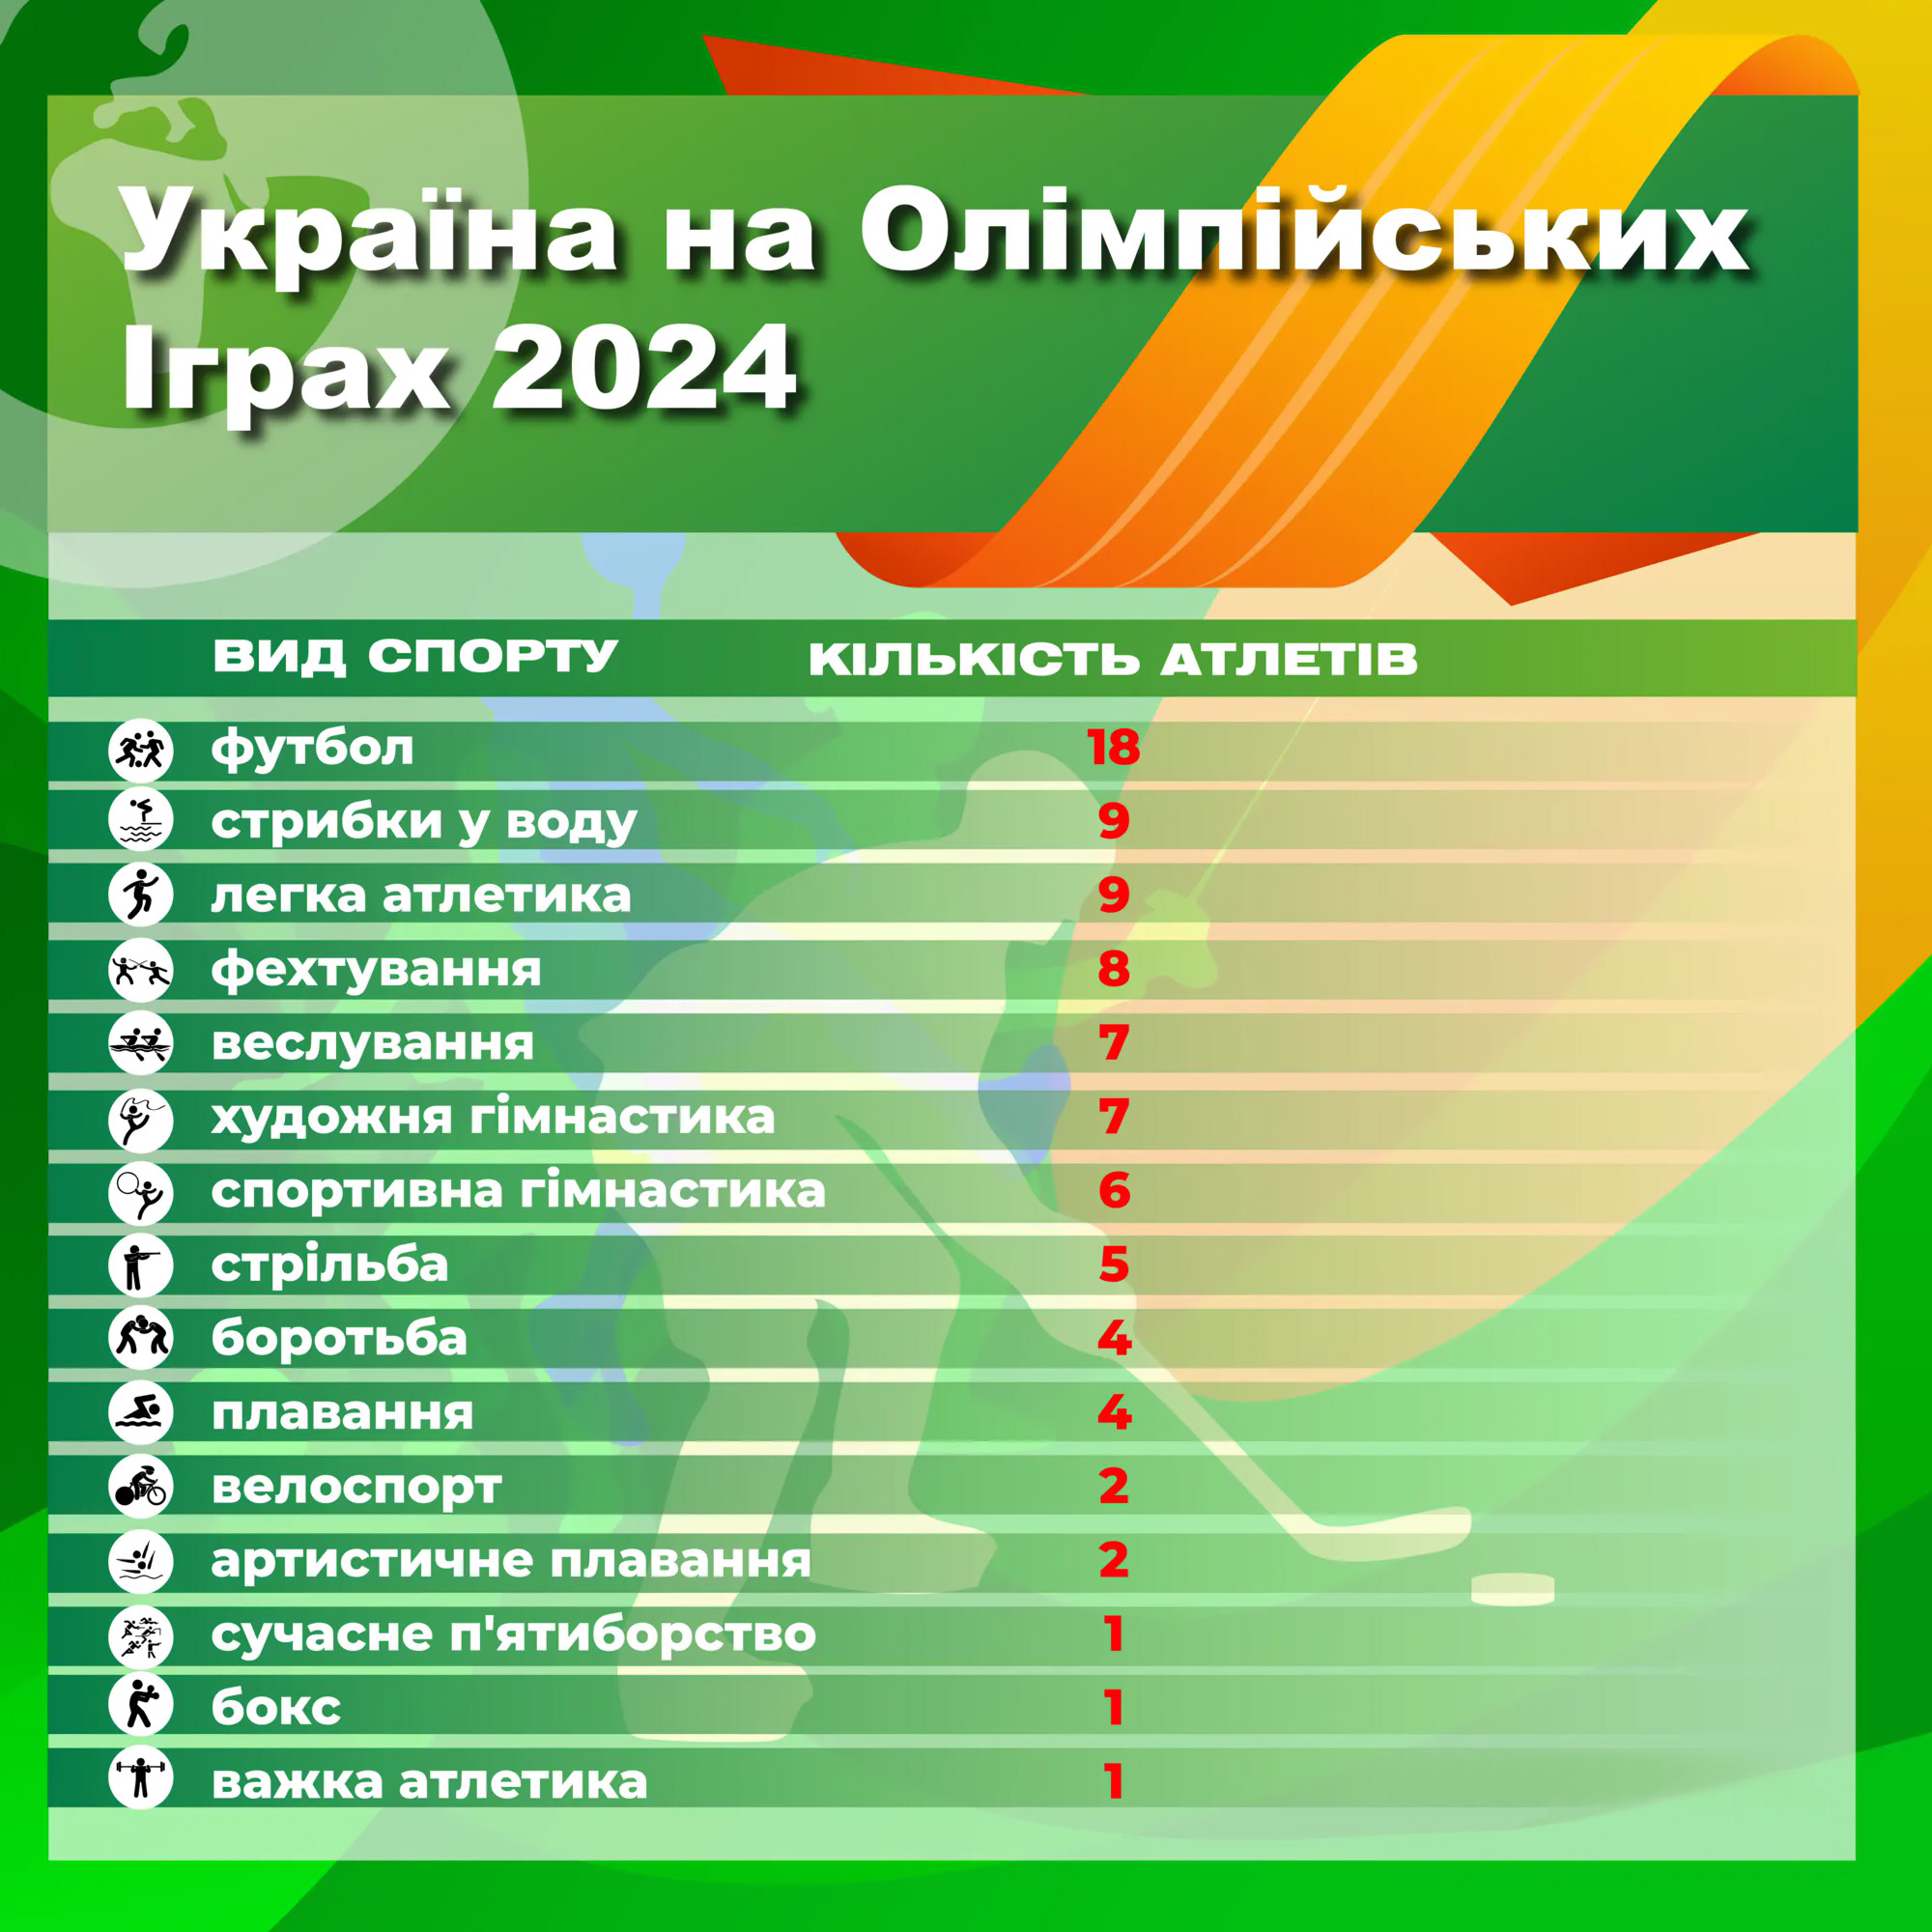 Україна на Олімпіаді буде представлена у понад 15 видах спорту і майже сотнею атлетів